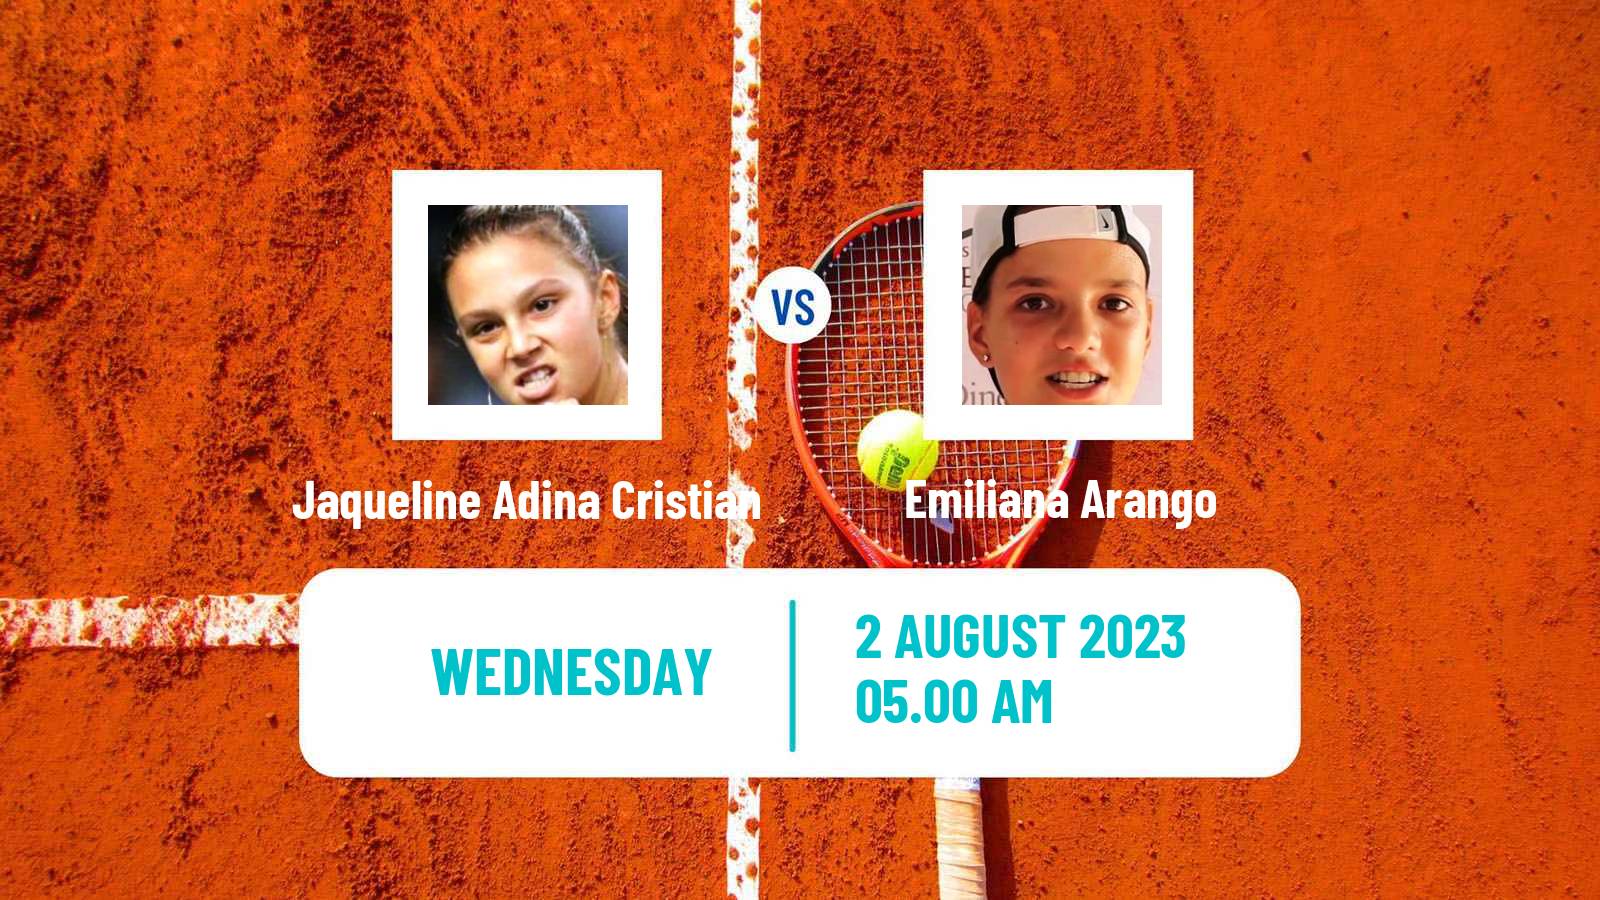 Tennis WTA Prague Jaqueline Adina Cristian - Emiliana Arango